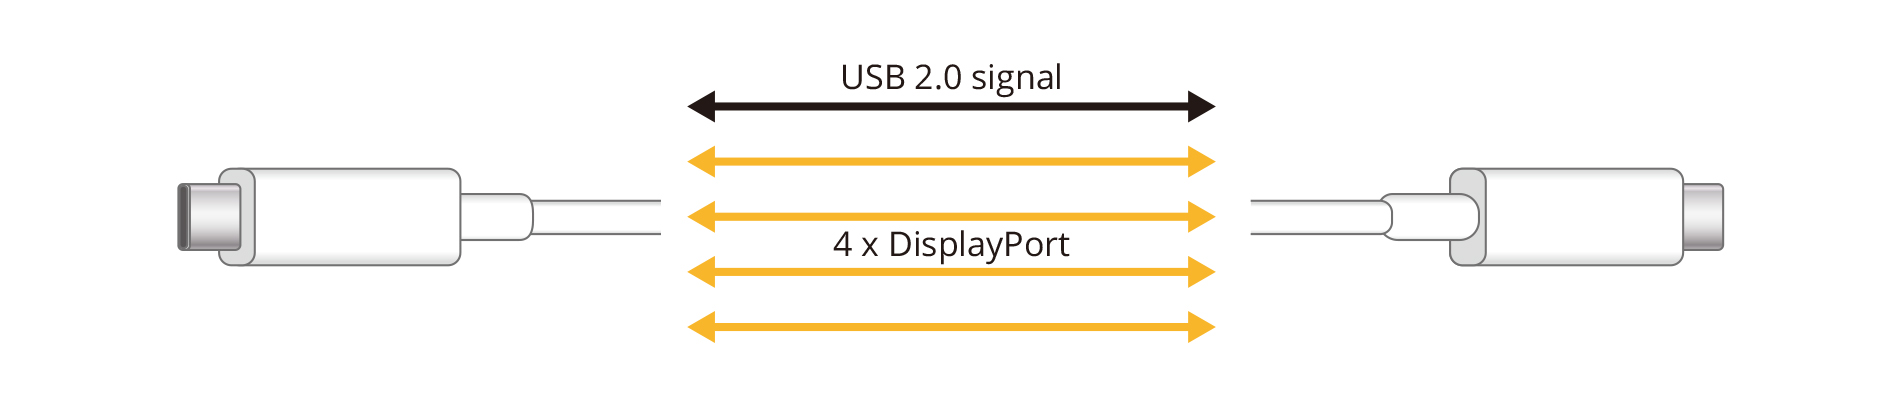 4K UHD 60Hz / USB2.0 Setting